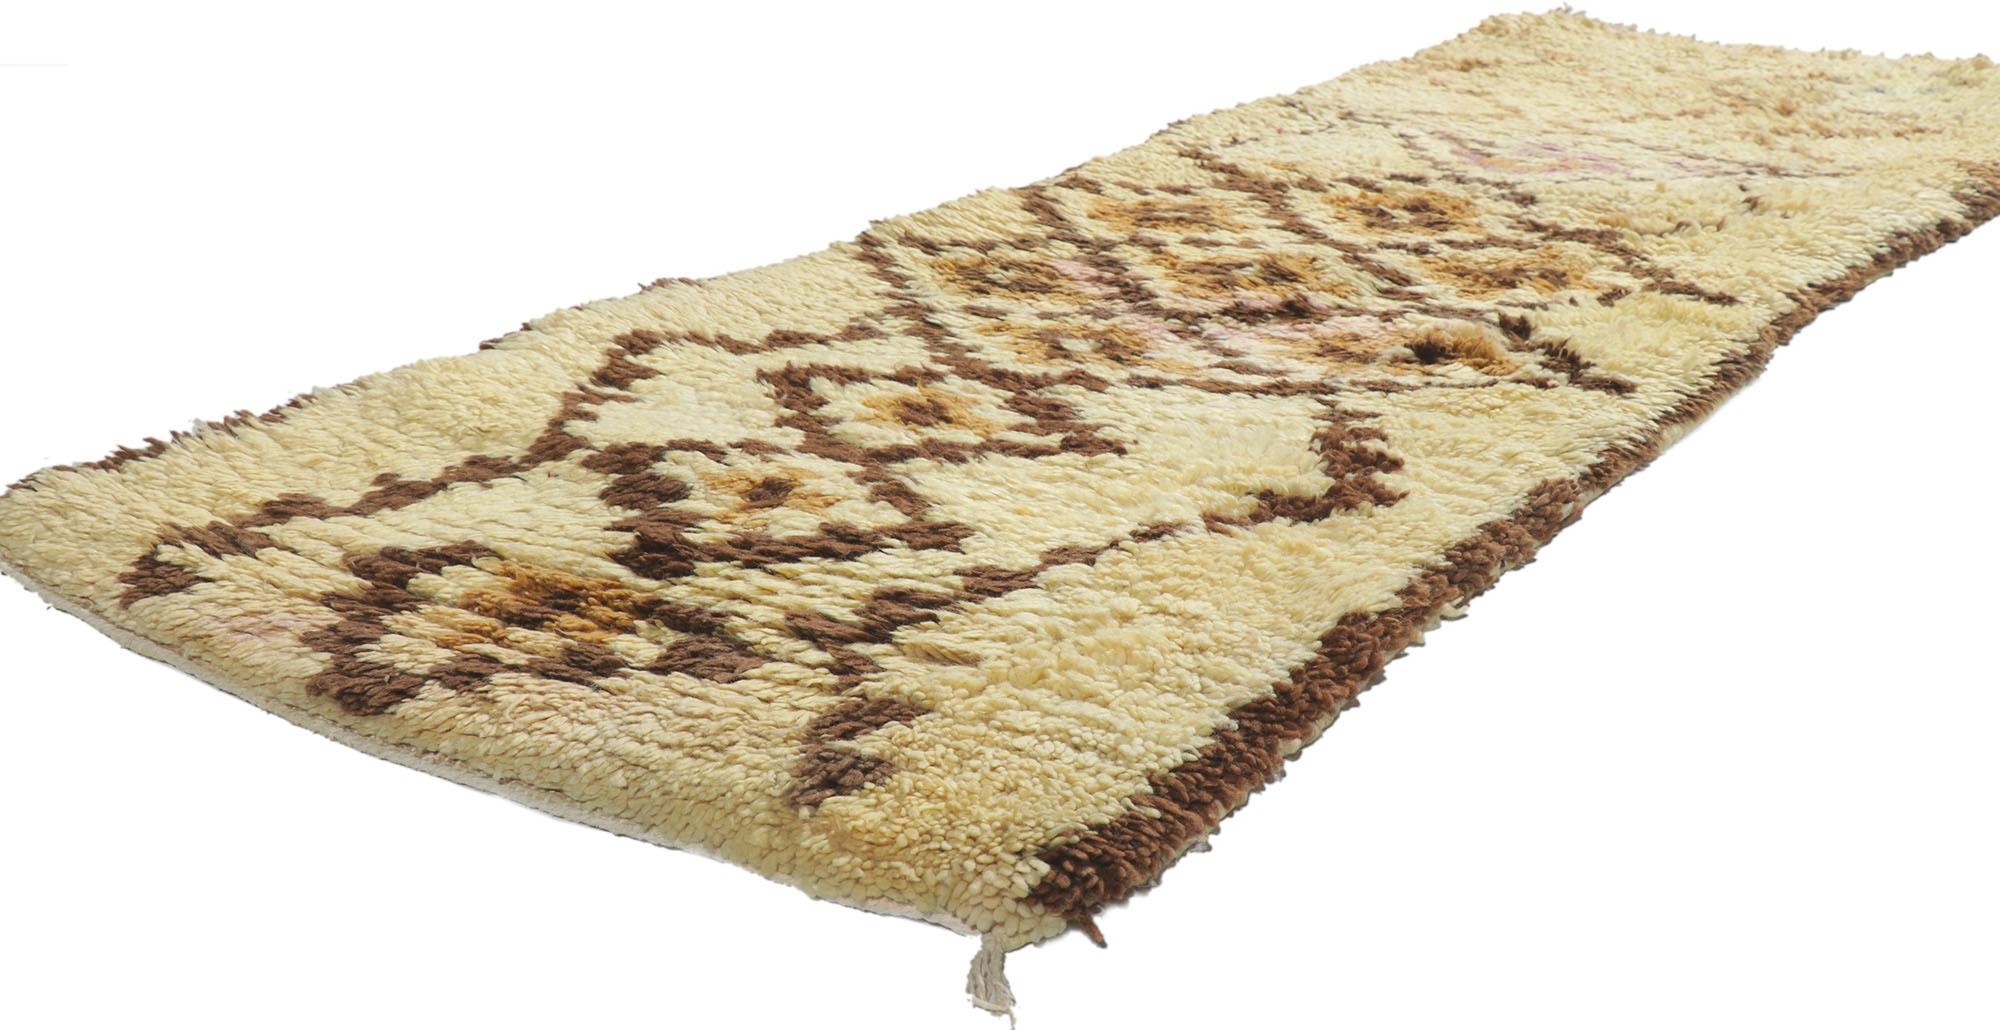 21611 Tapis marocain vintage en azilal, 02'04 x 05'10.
Wabi-Sabi rencontre la bohème neutre dans ce tapis berbère marocain Azilal vintage en laine nouée à la main. Ce tapis marocain vintage Azilal tisse un réseau orthographique de losanges, tous